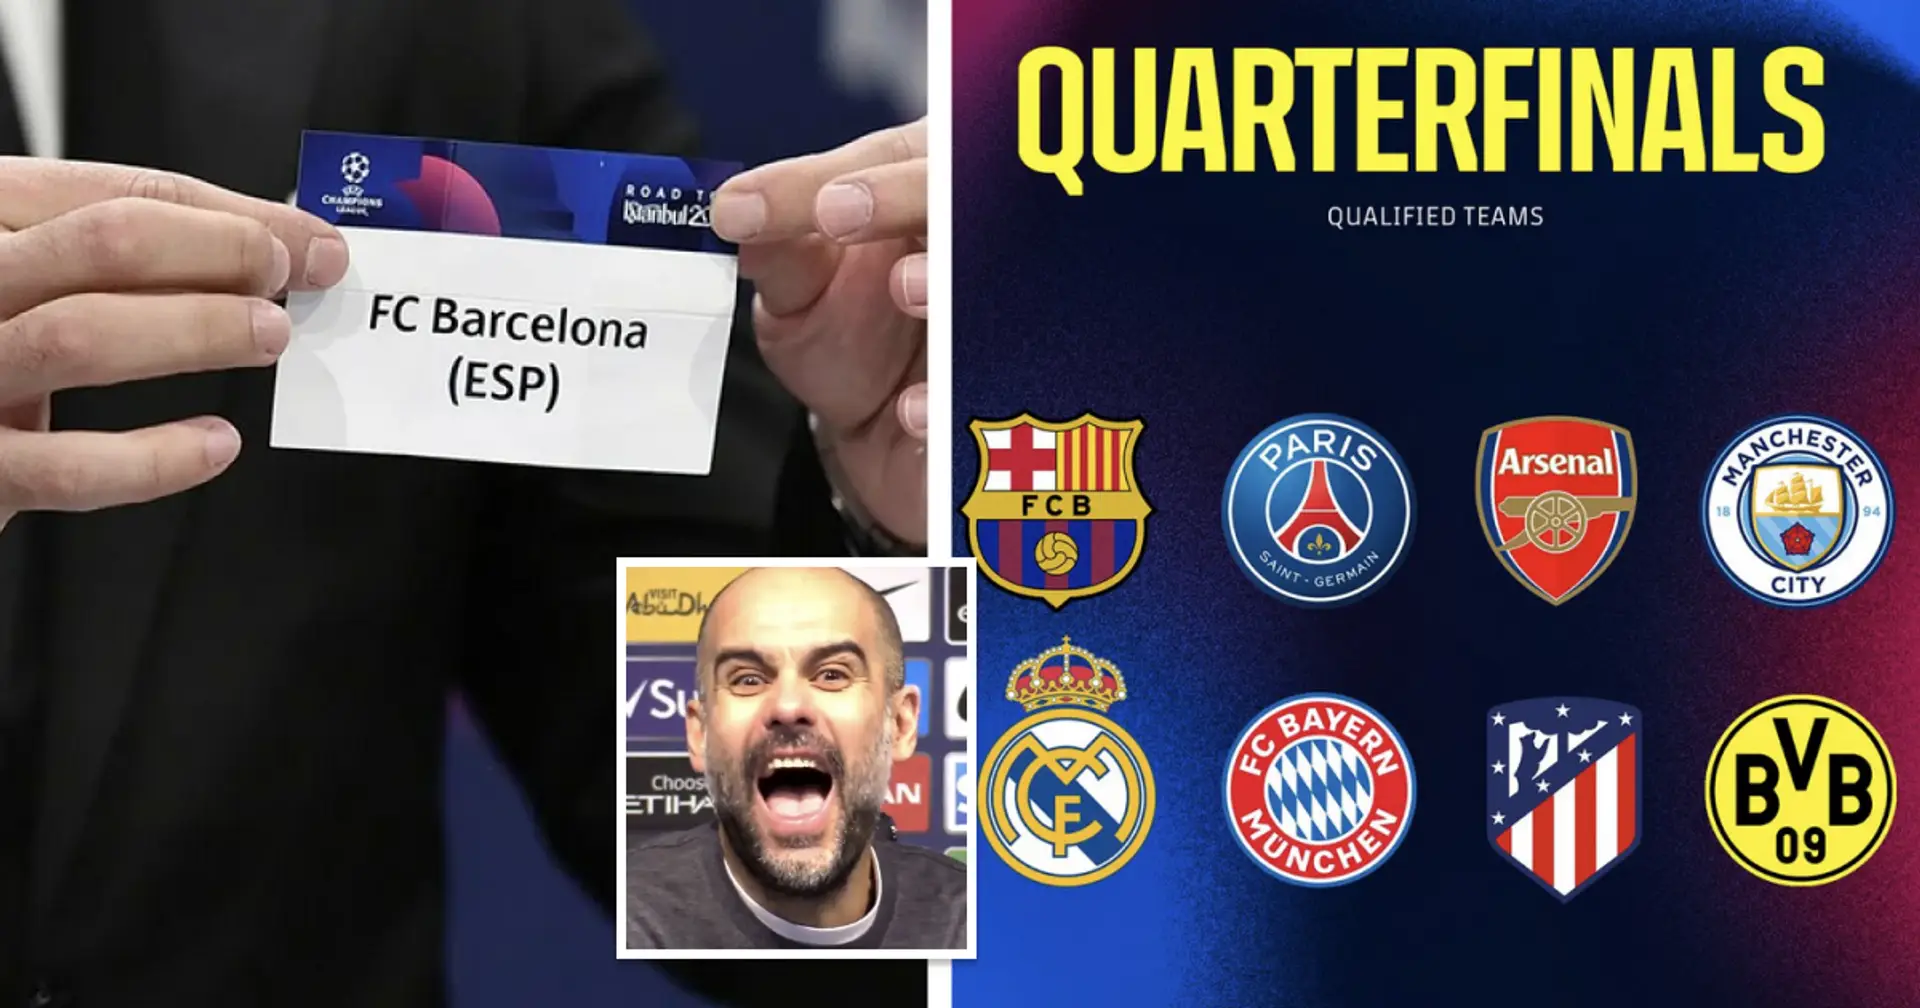 Classement des adversaires potentiels du Barça en Ligue des champions, du plus au moins désiré